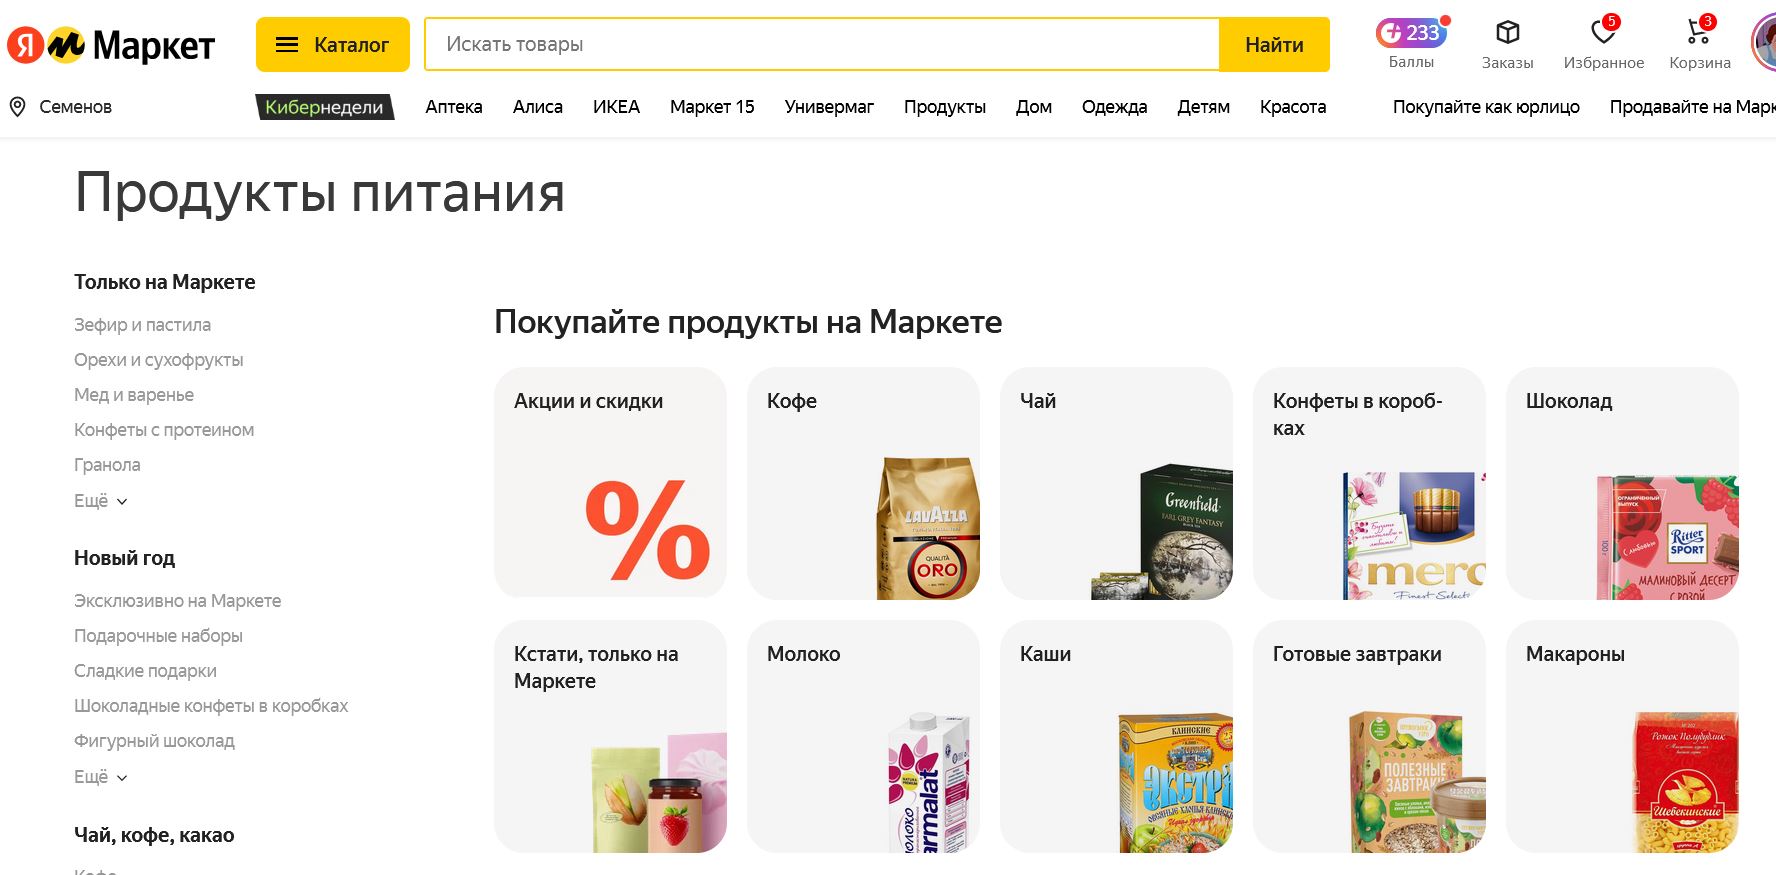 Продукты питания на Яндекс.Маркете